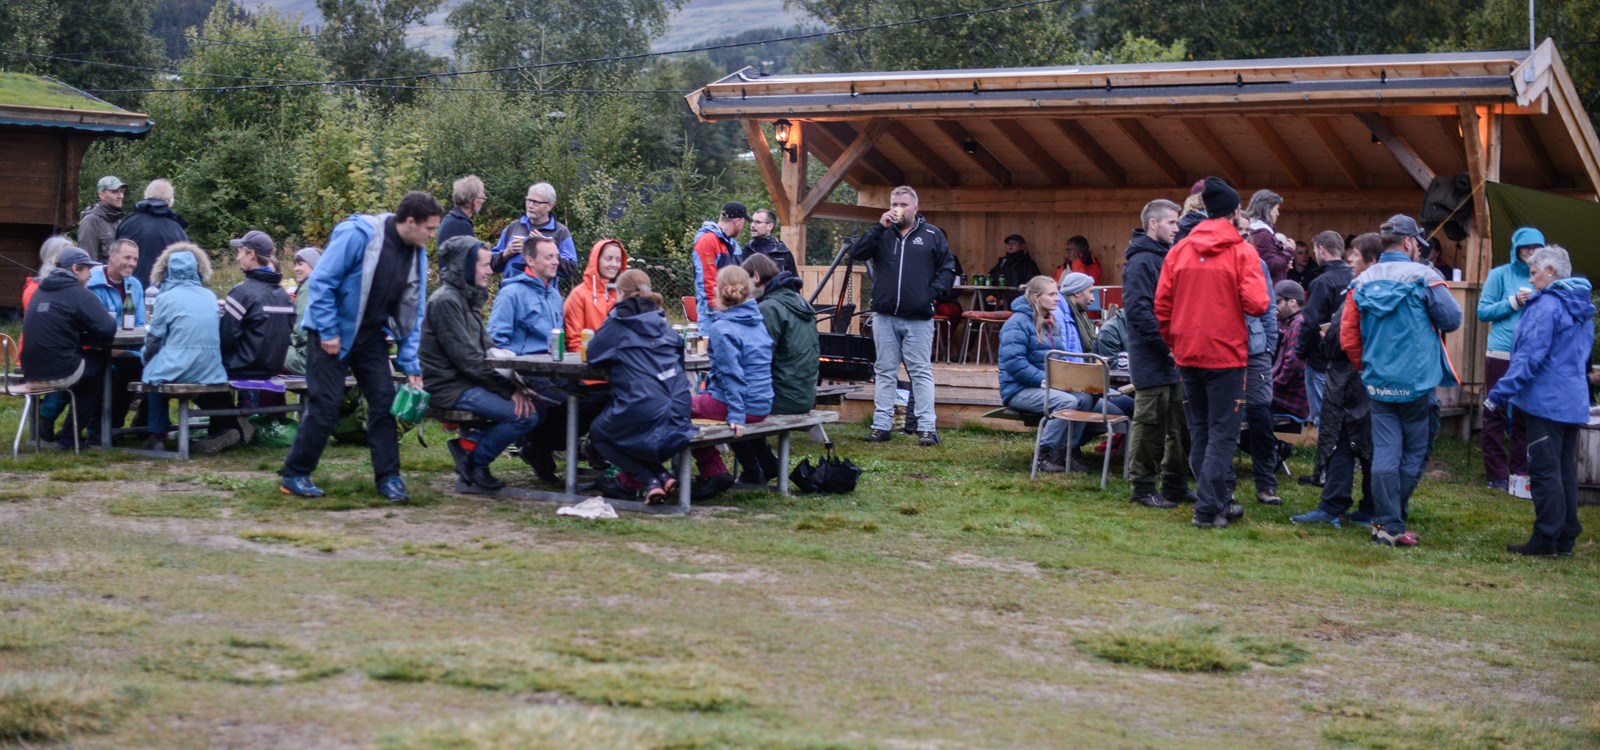 Fredagskos Rogn Camping (13 Of 20)